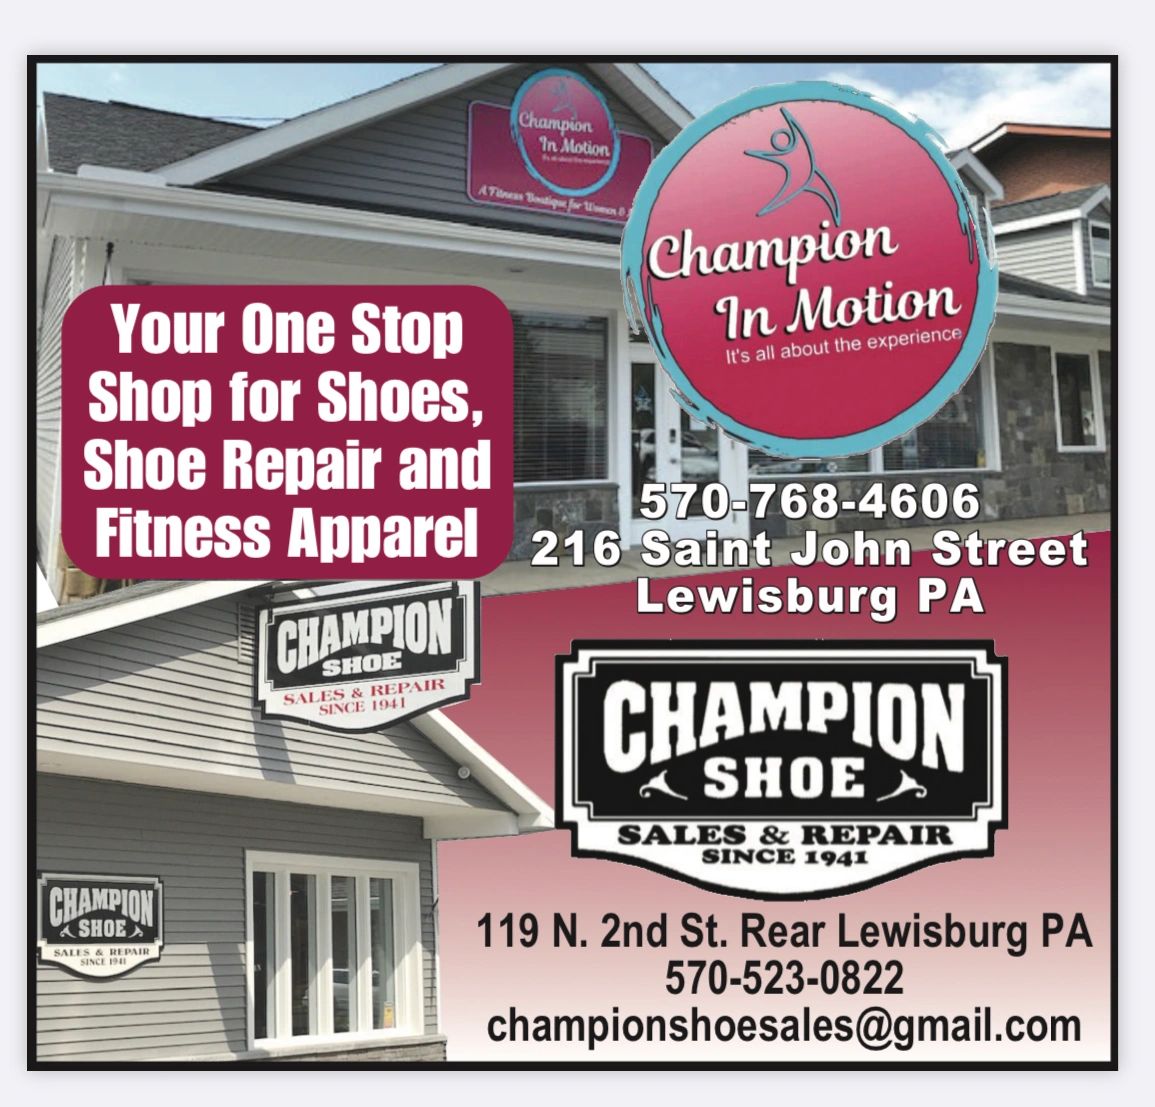 Champion Shoe Sales  Repair